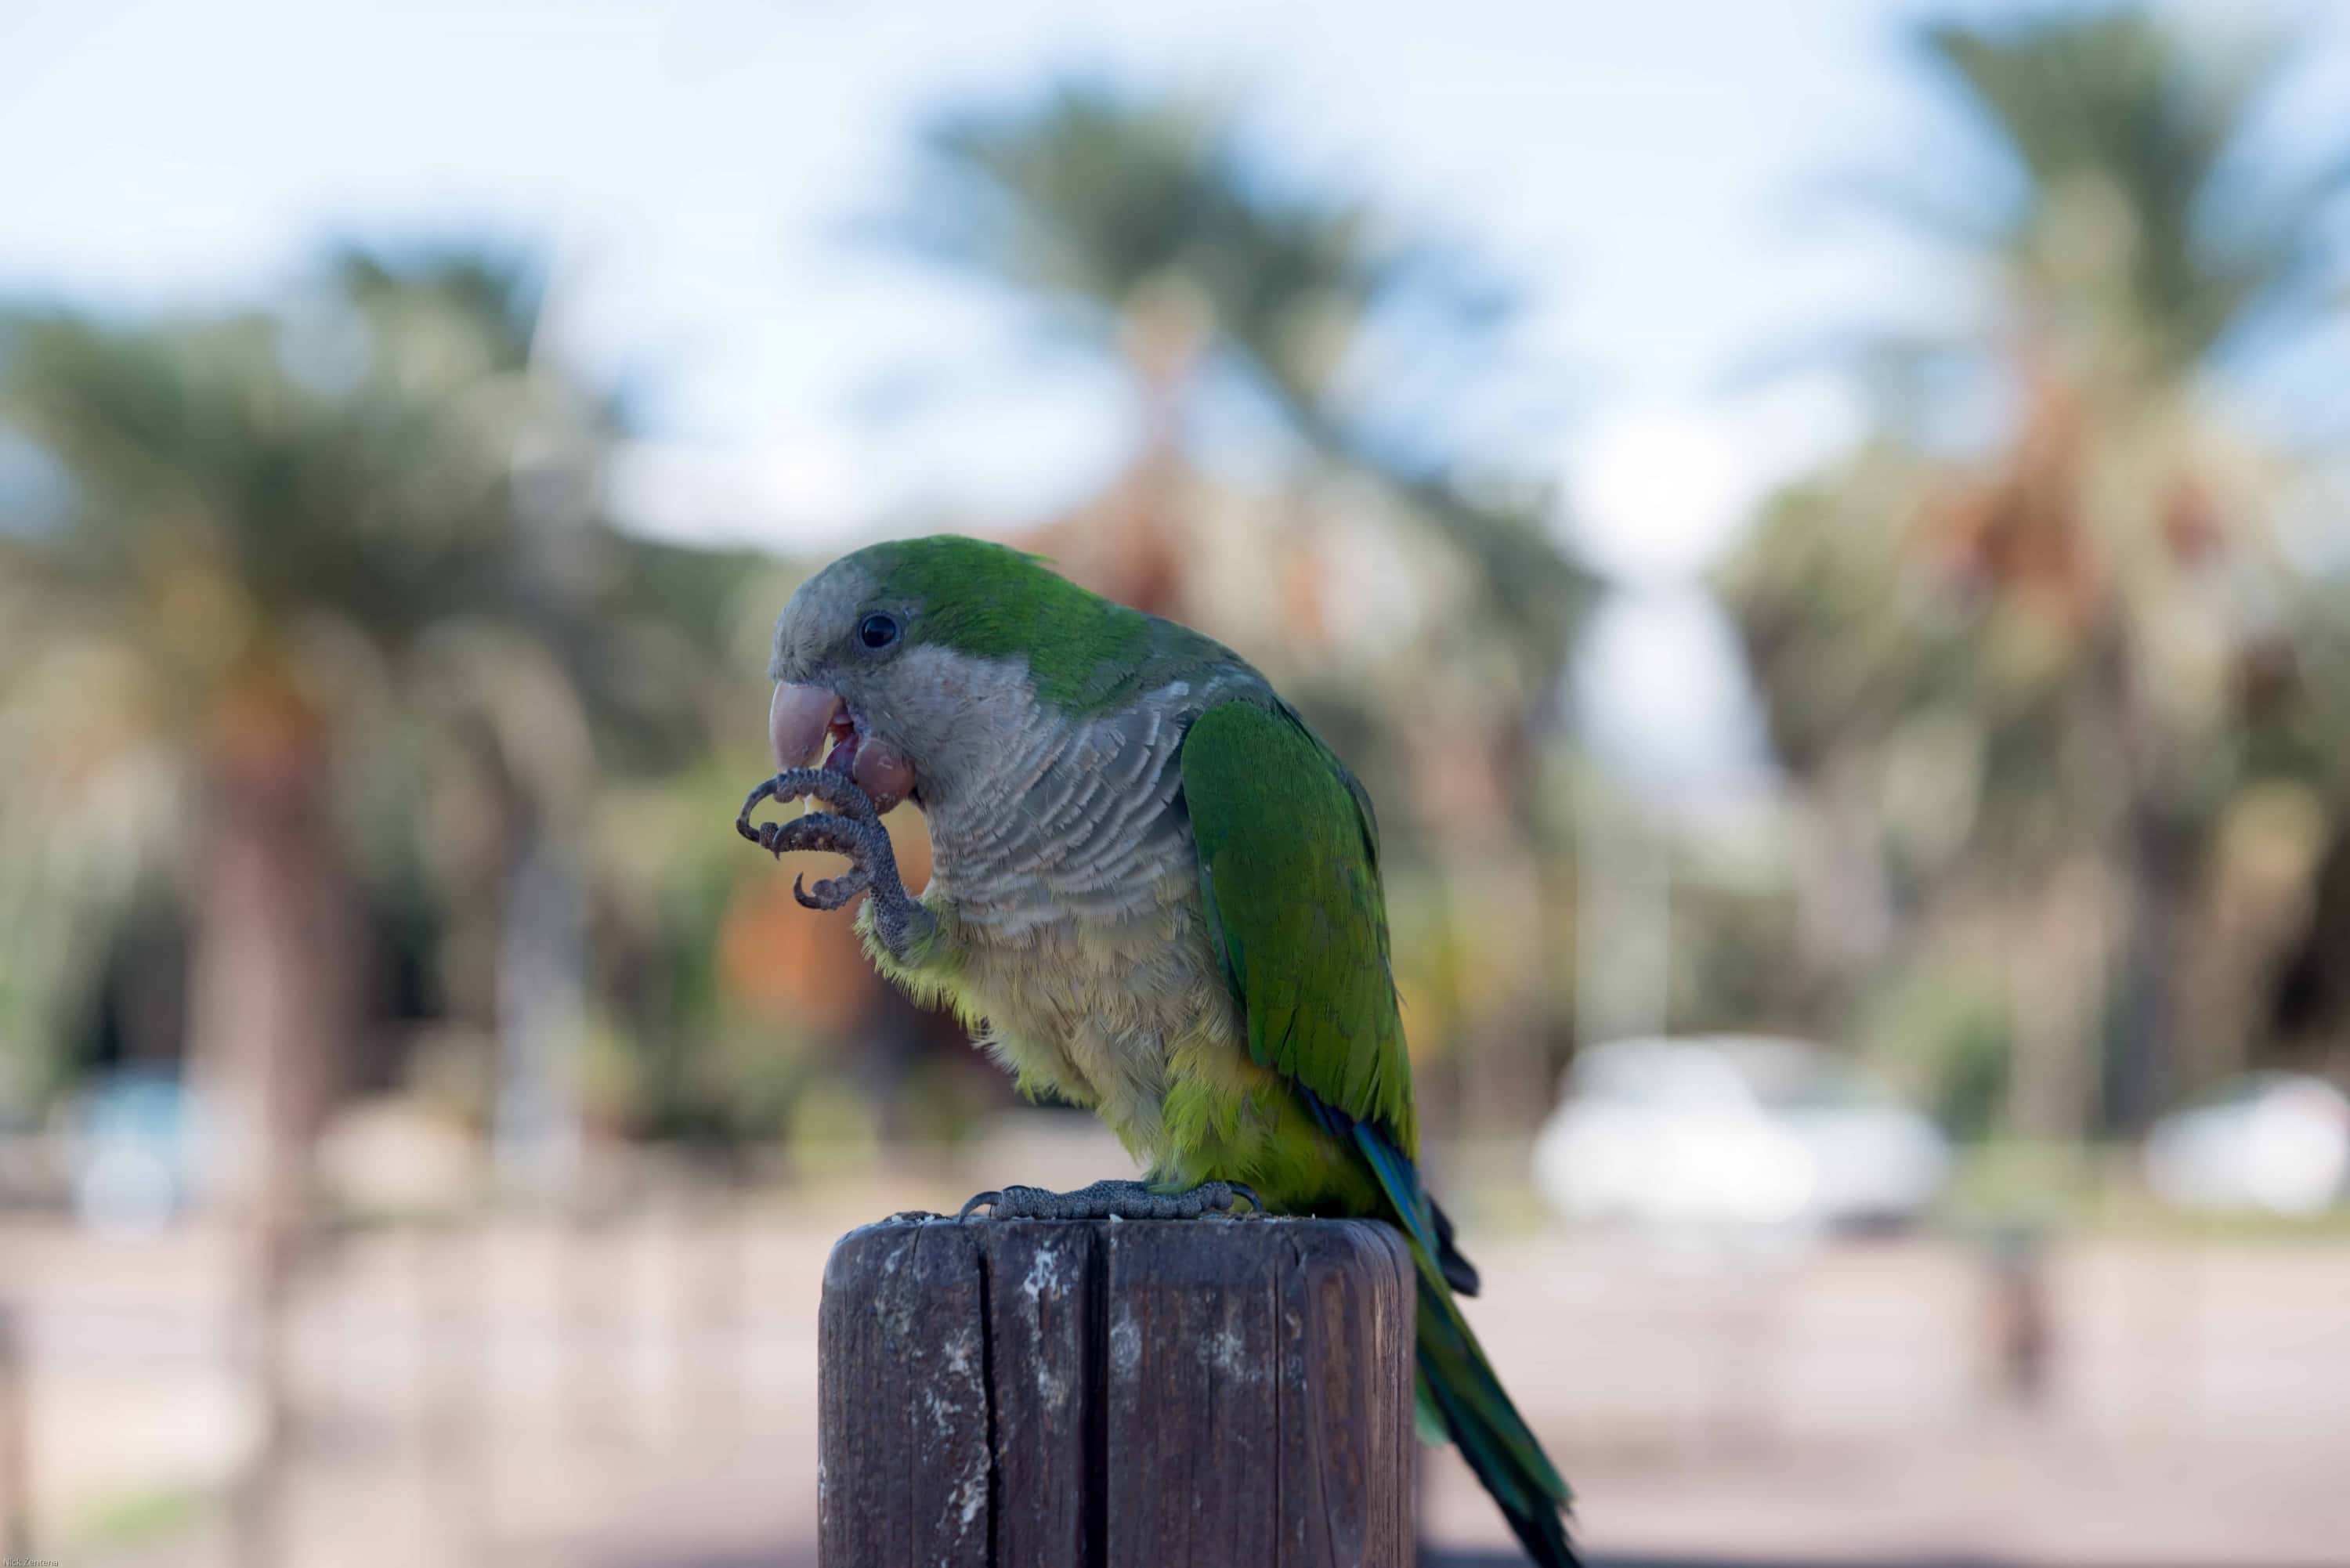 Quaker Parrot eating